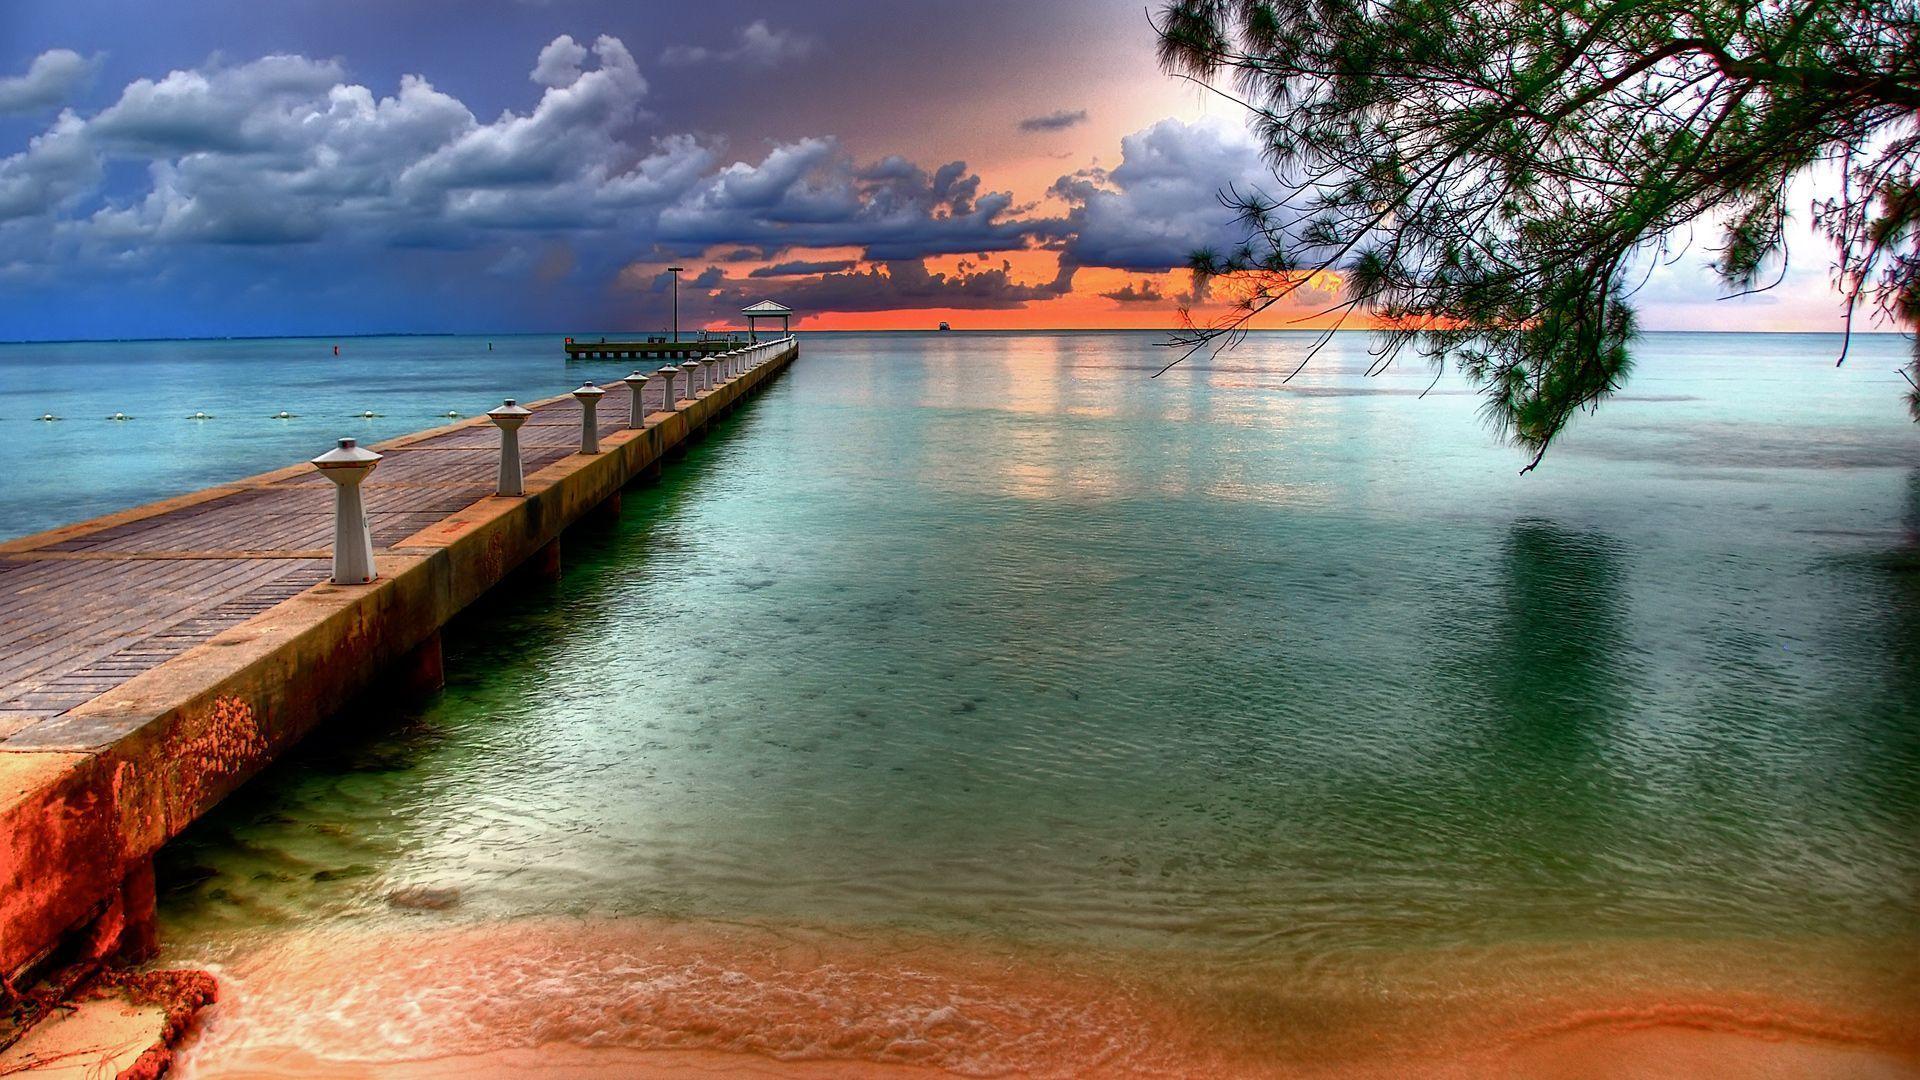 Với ảnh nền Key West cho máy tính, bạn sẽ cảm thấy như mình đang sống trong một tuyệt tác nghệ thuật sống động. Từ những bãi biển ngập tràn ánh nắng đến các địa danh lịch sử và vườn hoa rực rỡ, hình ảnh này sẽ mang đến cho bạn niềm cảm hứng mới mẻ mỗi khi mở máy tính.